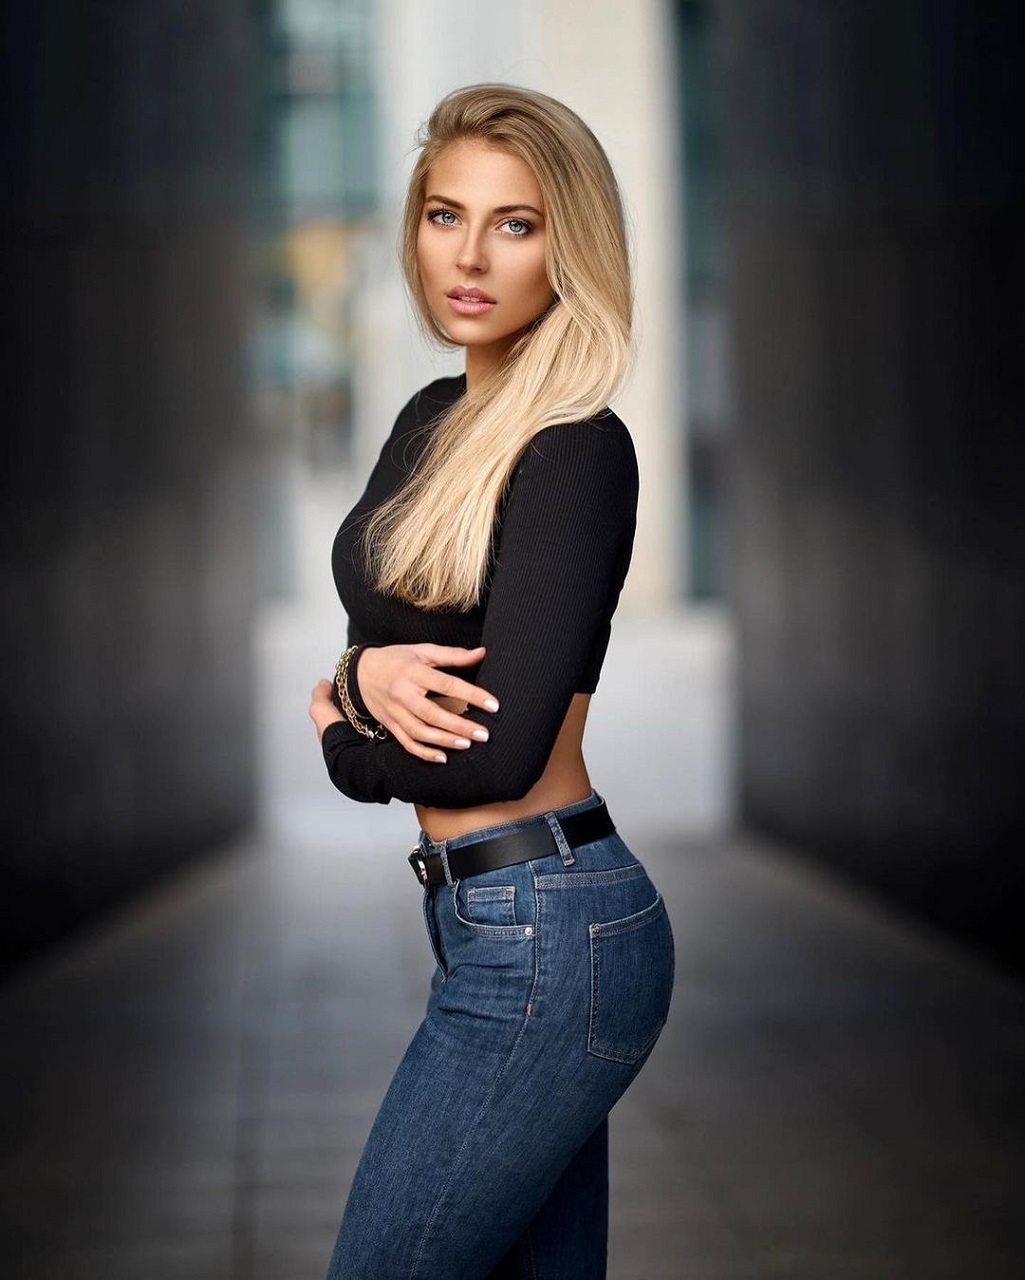 Women Model Long Hair Blonde Black Top Bare Midriff Jeans Women Outdoors Black Belt Blue Jeans 1025x1280